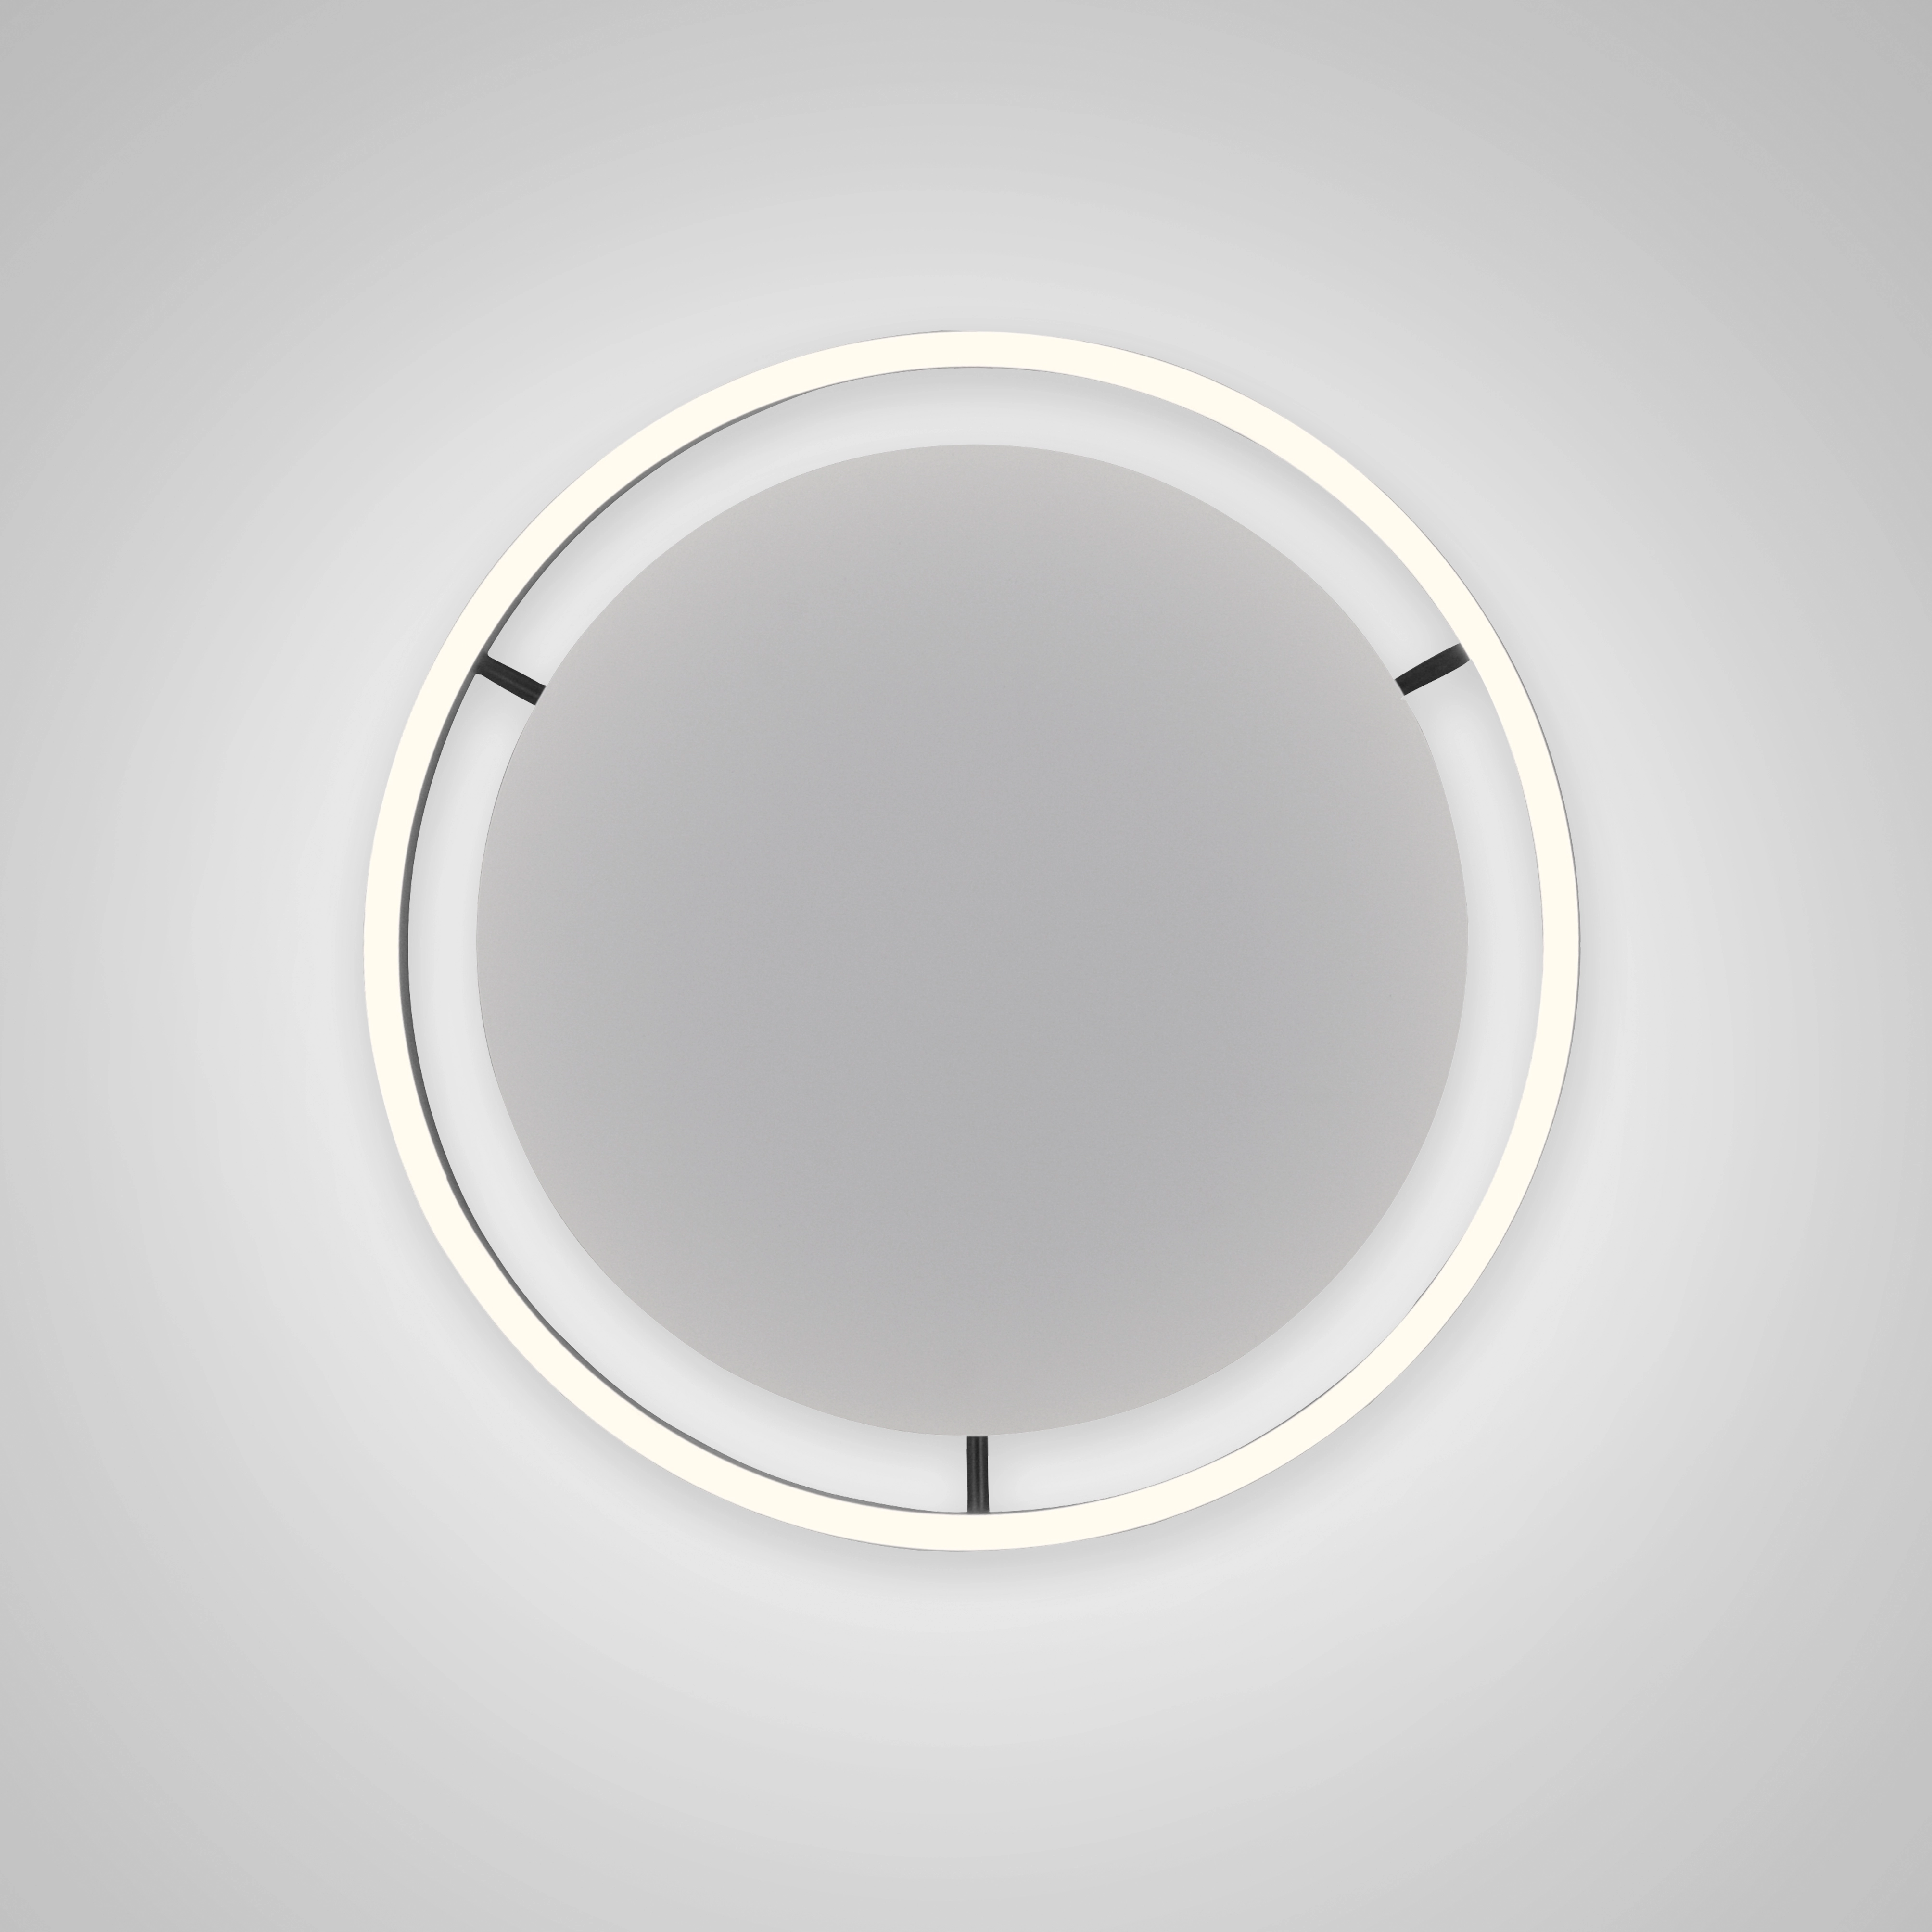 Just Light. LED-Deckenleuchte Ritus Ø 39 Anthrazit kaufen bei OBI | Deckenlampen